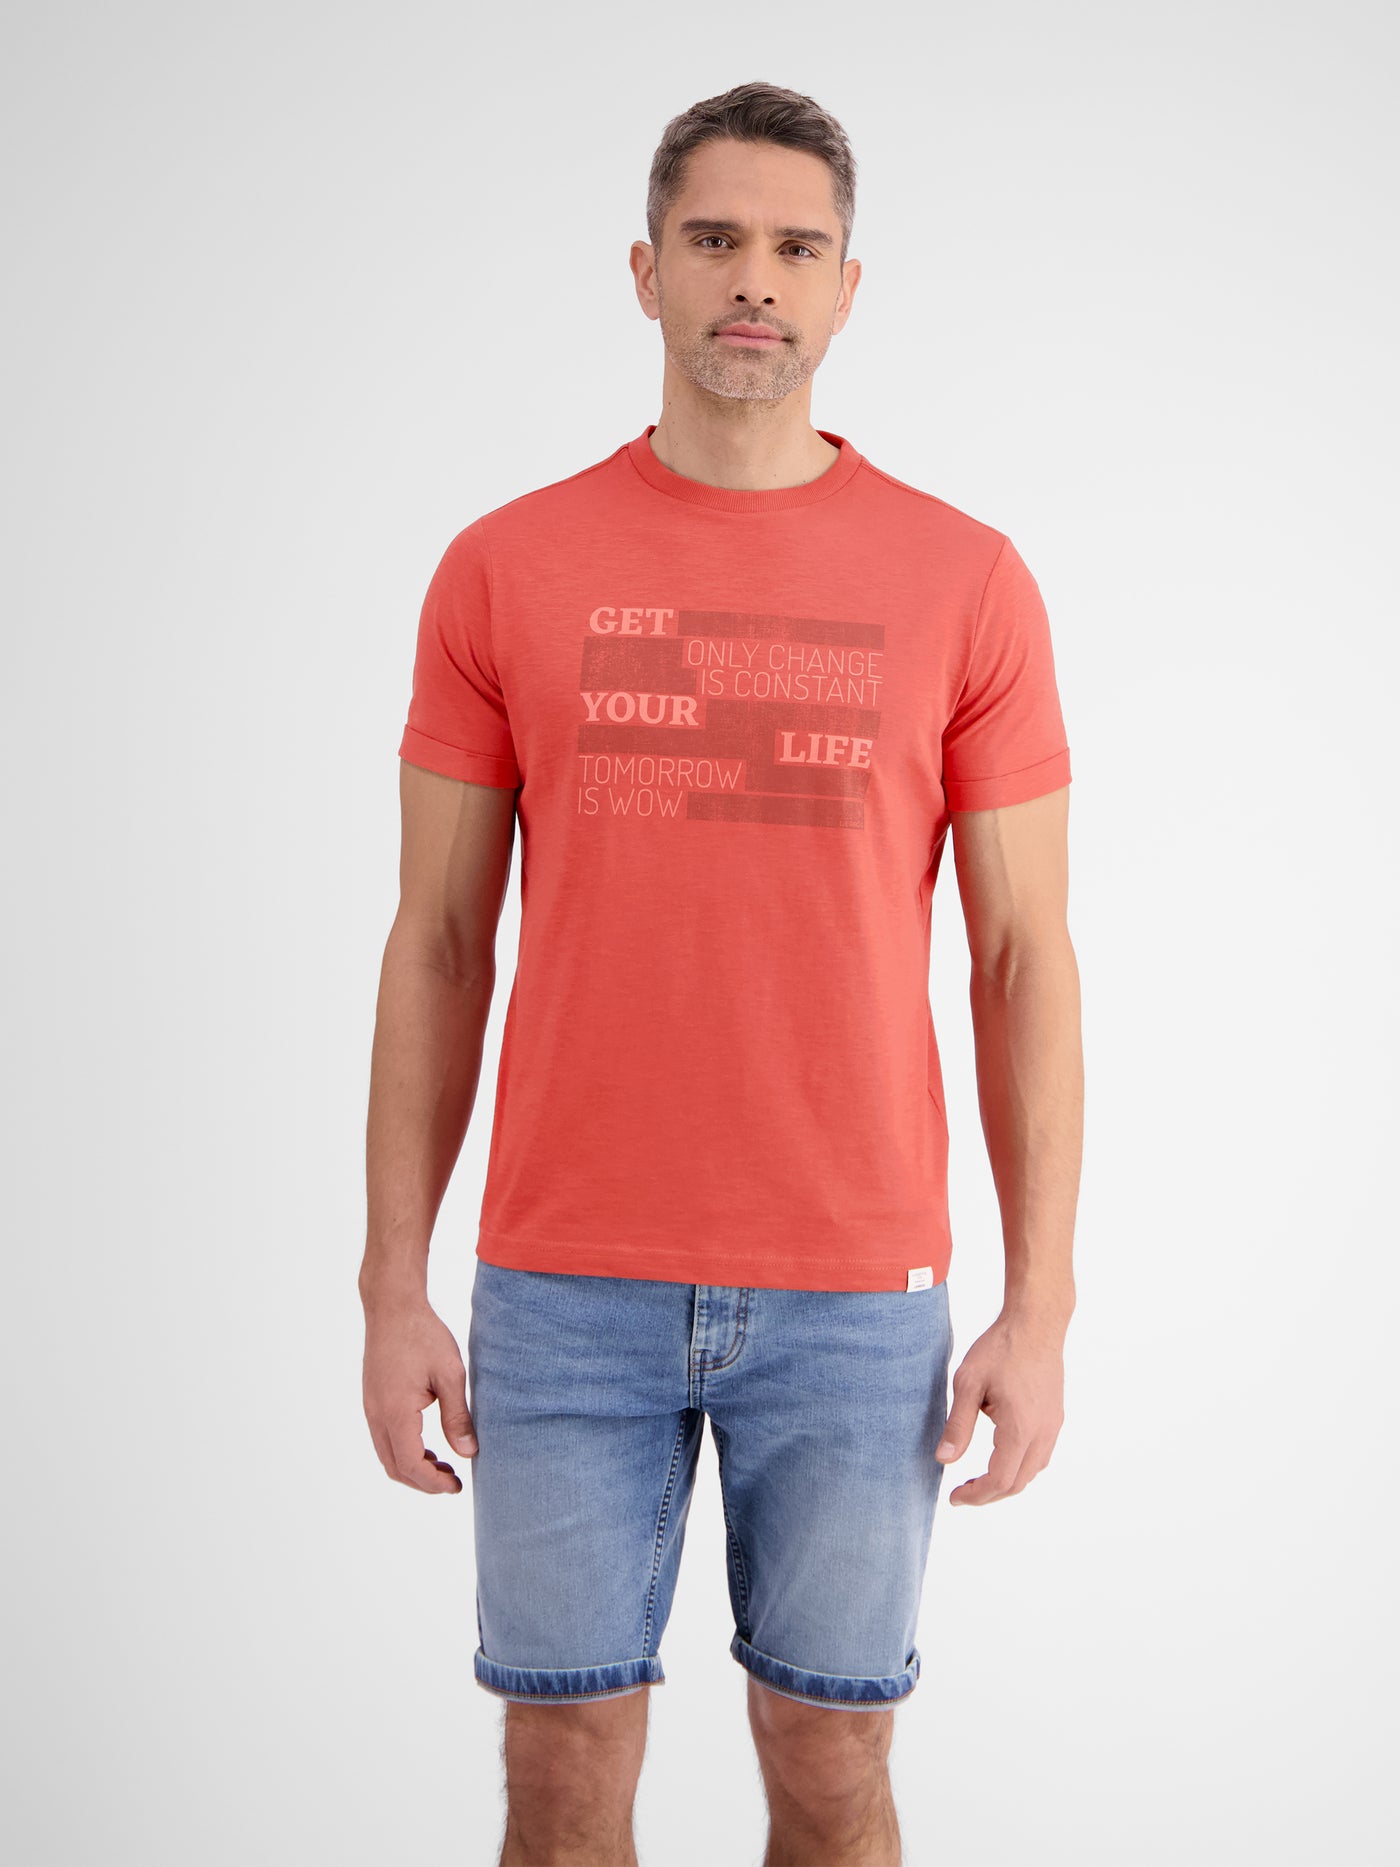 T-shirt met een modieuze print